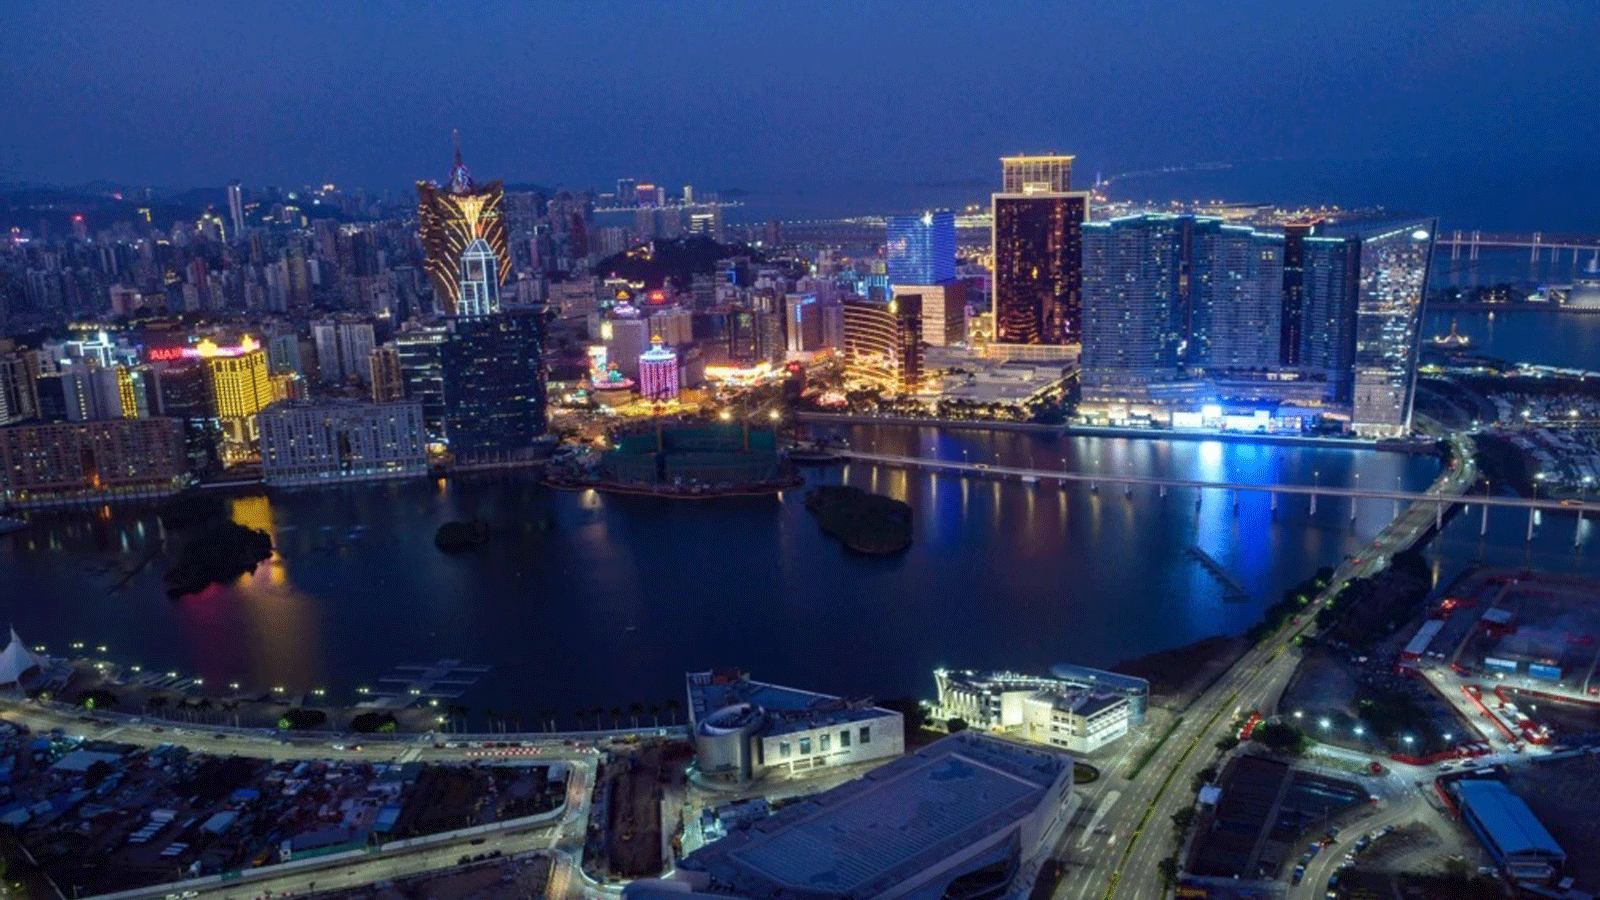 تُظهر هذه الصورة التي تم التقاطها في 30 كانون الثاني/ يناير 2020، منظرًا عامًا لمدينة ماكاو من منصة المراقبة في برج ماكاو.